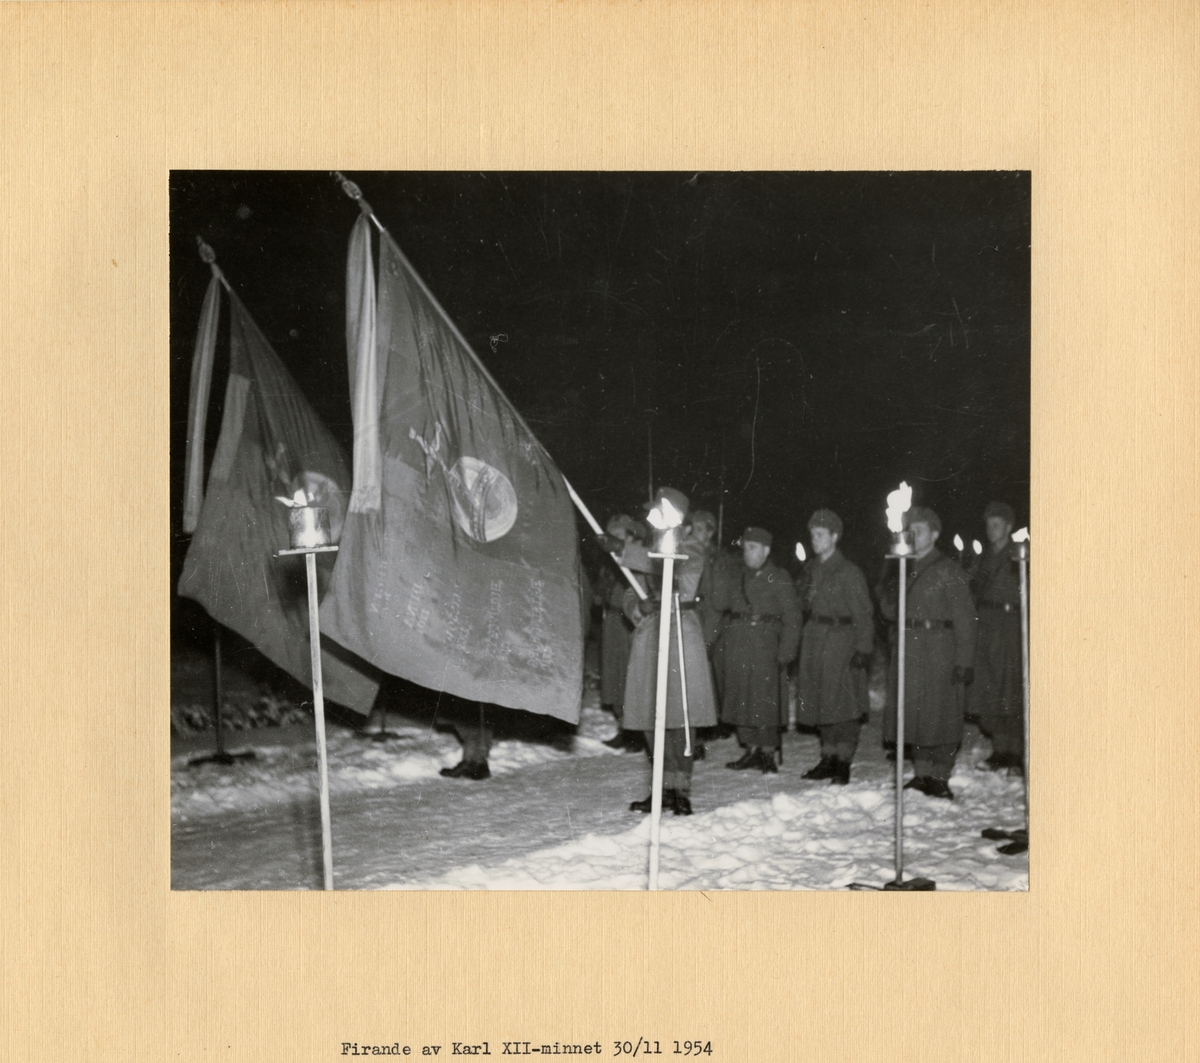 Text i fotoalbum: "Firande av Karl XII-minnet den 30/11 1954."